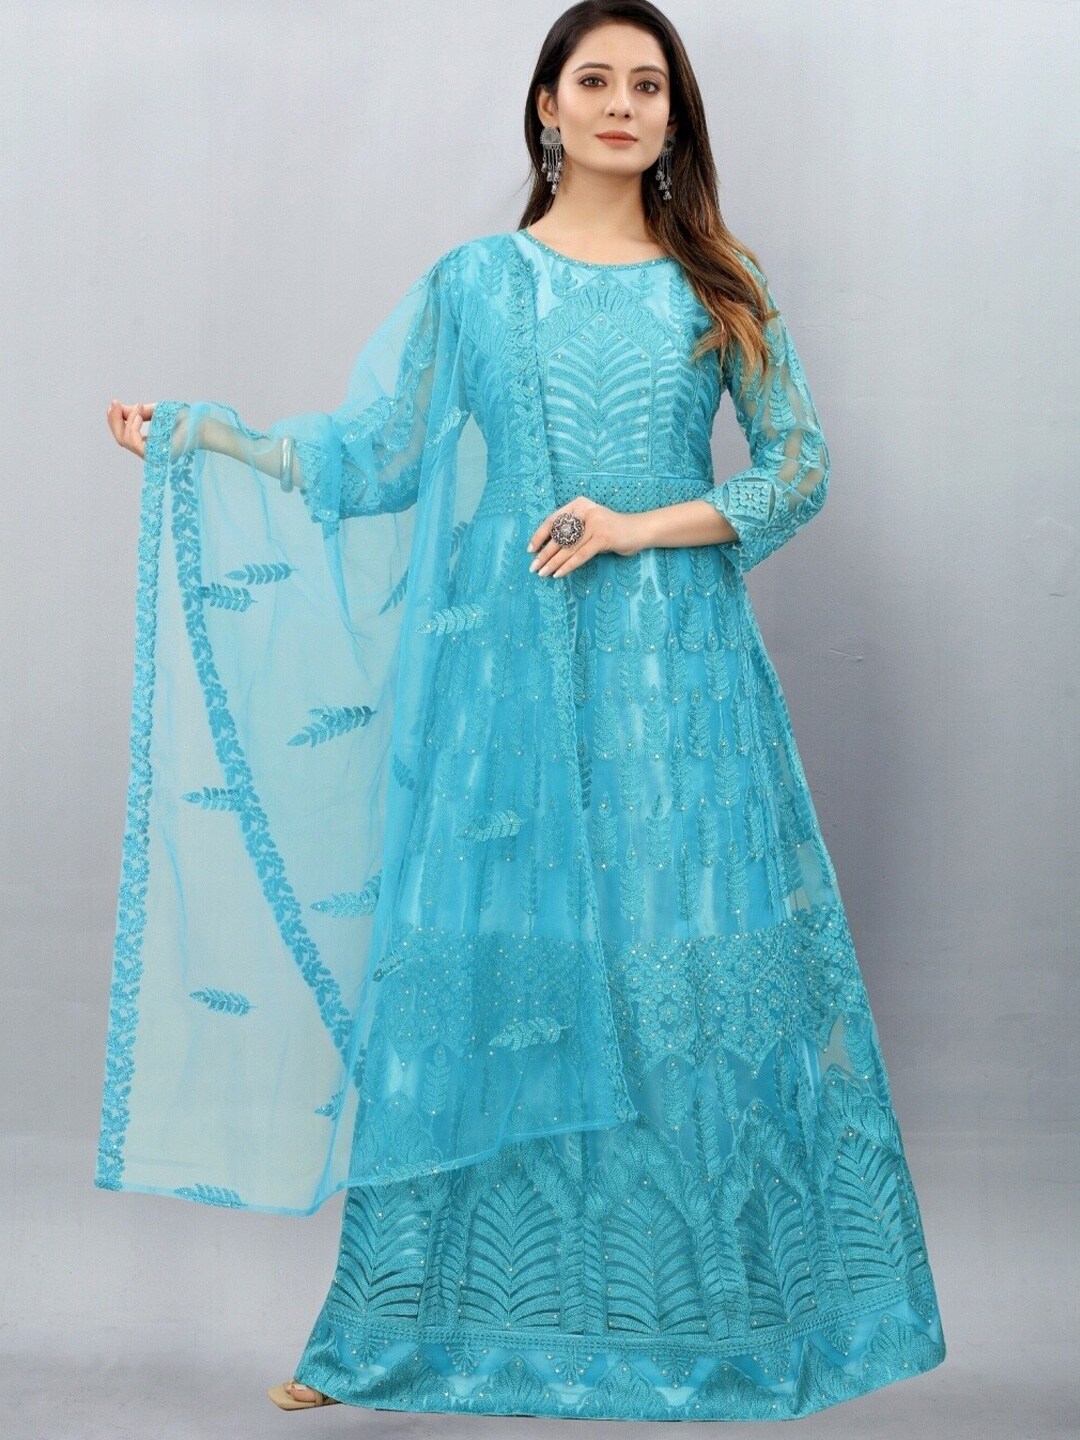 APNISHA Turquoise Blue Embellished Net Ethnic Maxi Maxi Dress Price in India